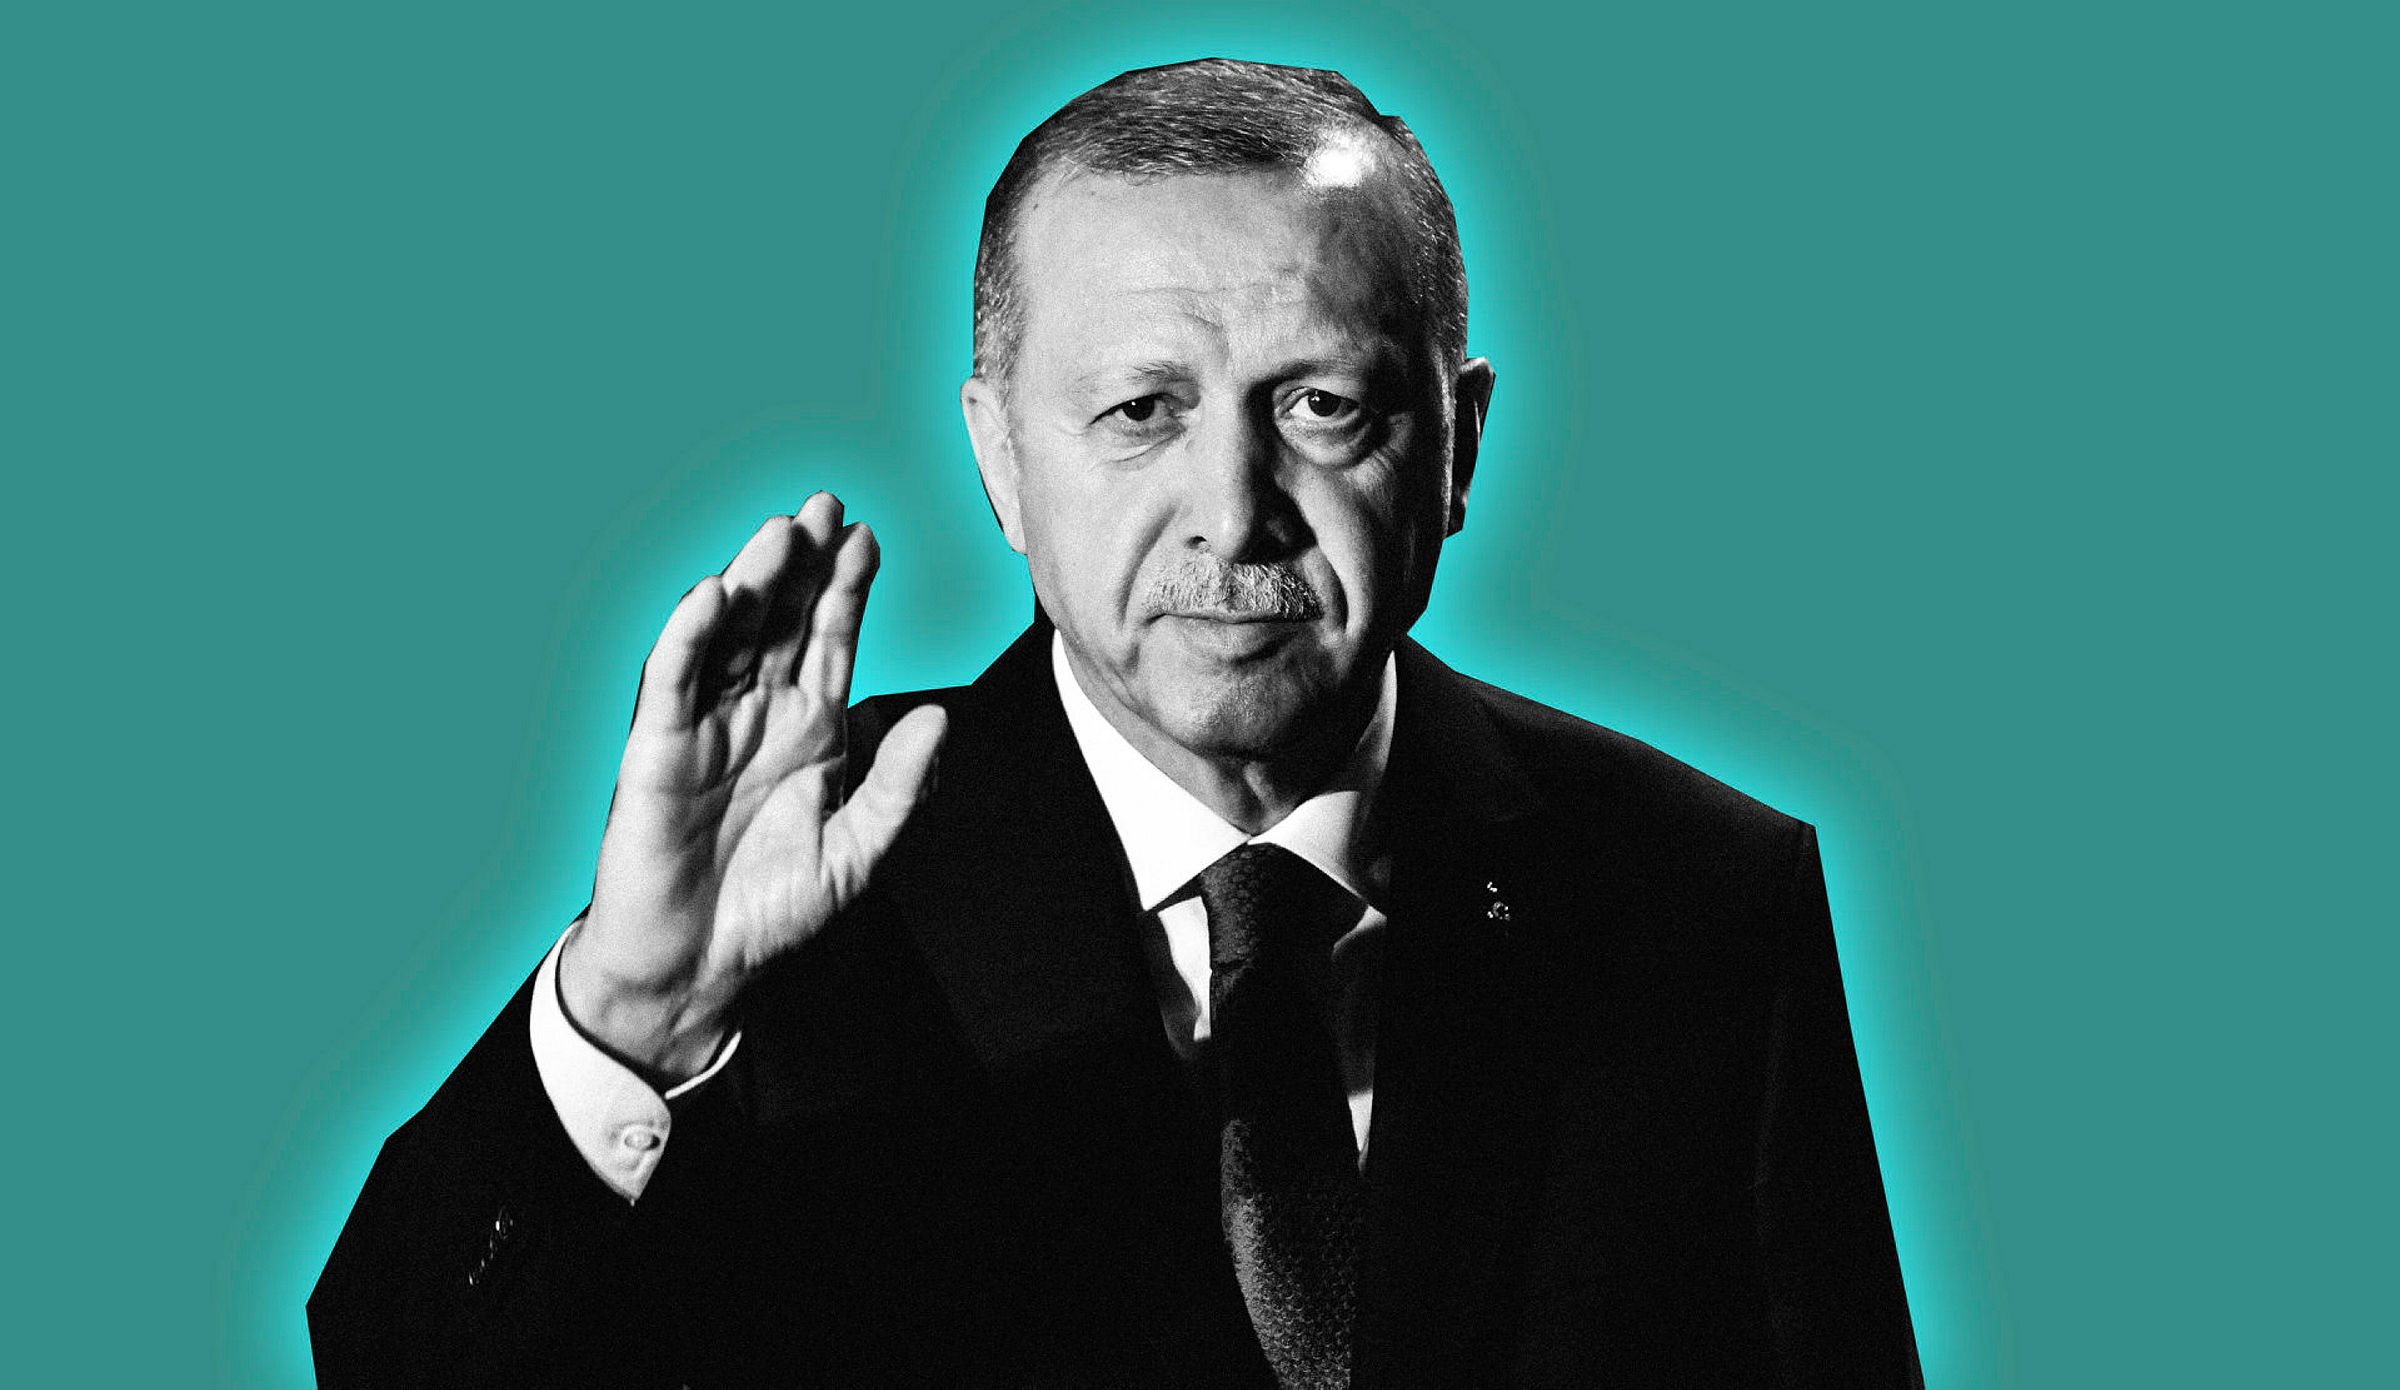 Mye peker i feil retning for Tyrkias president